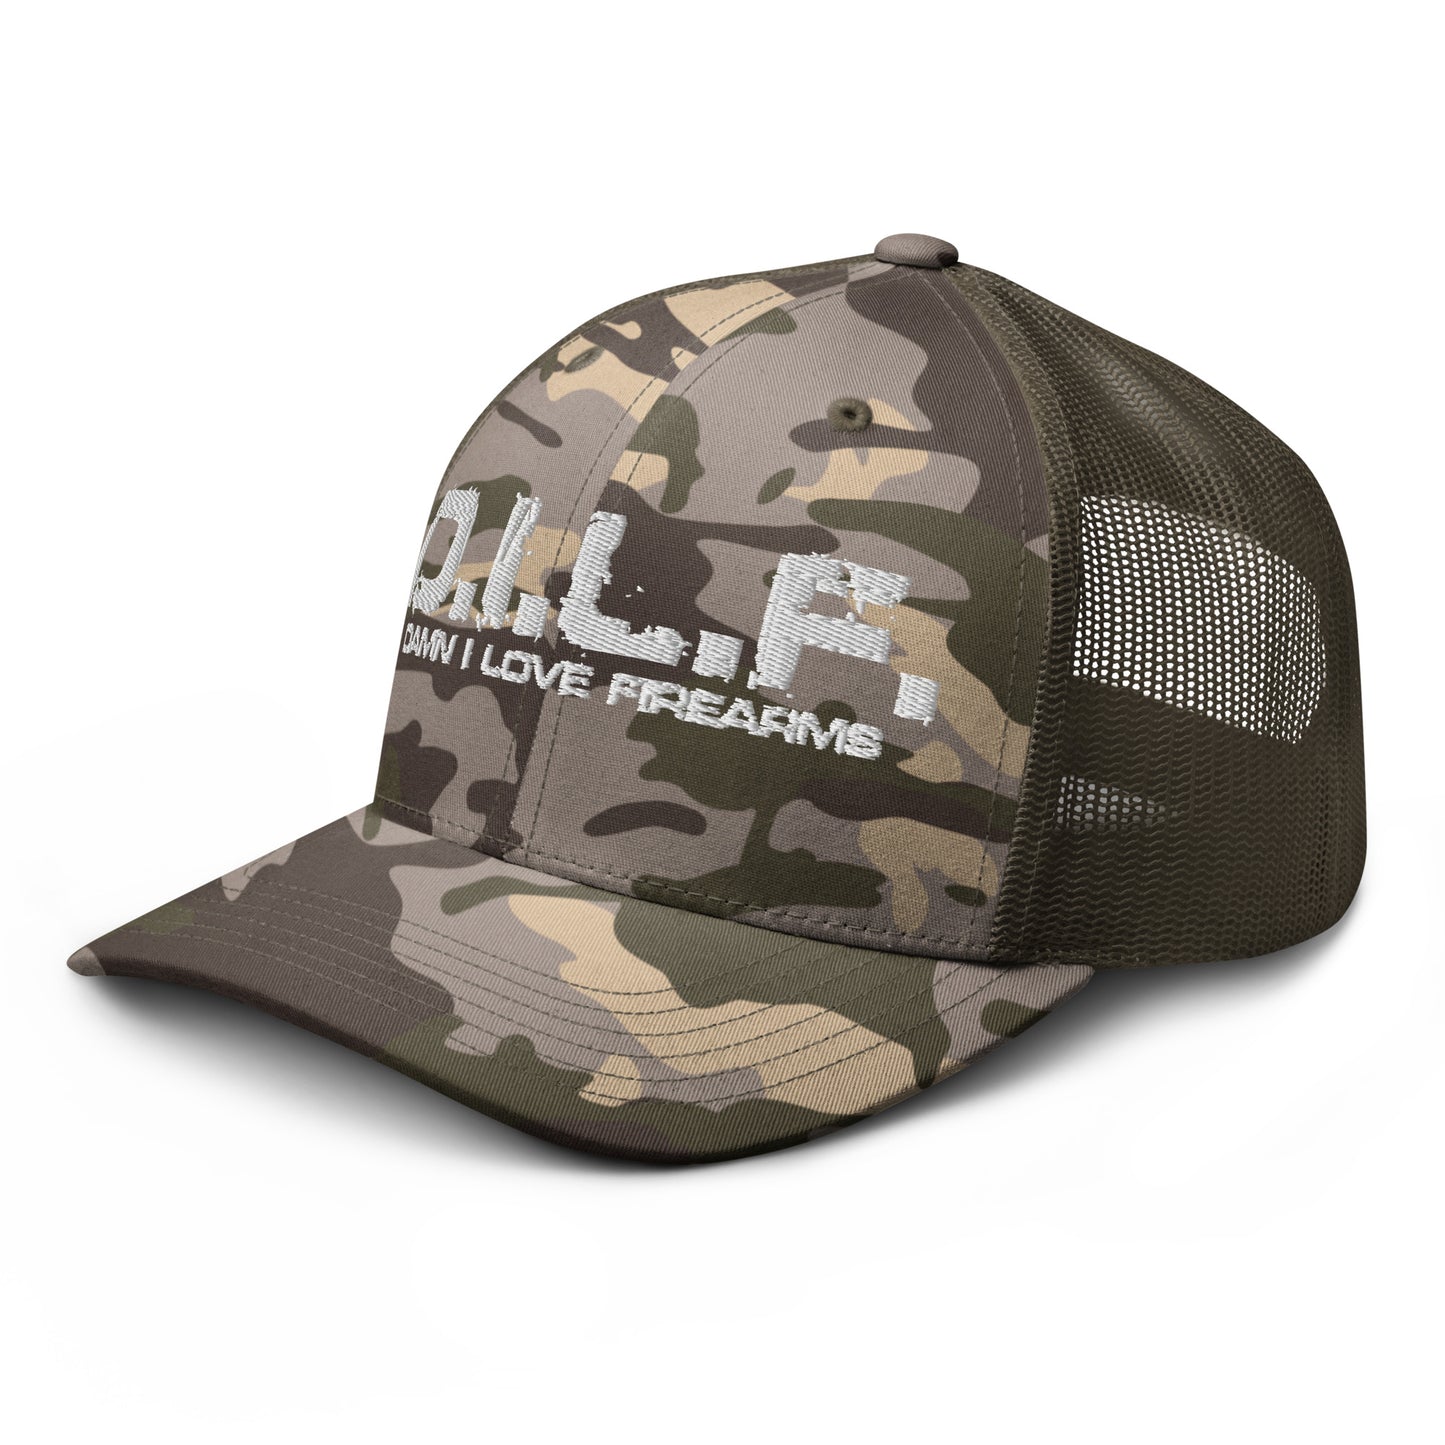 DILF Camouflage trucker hat